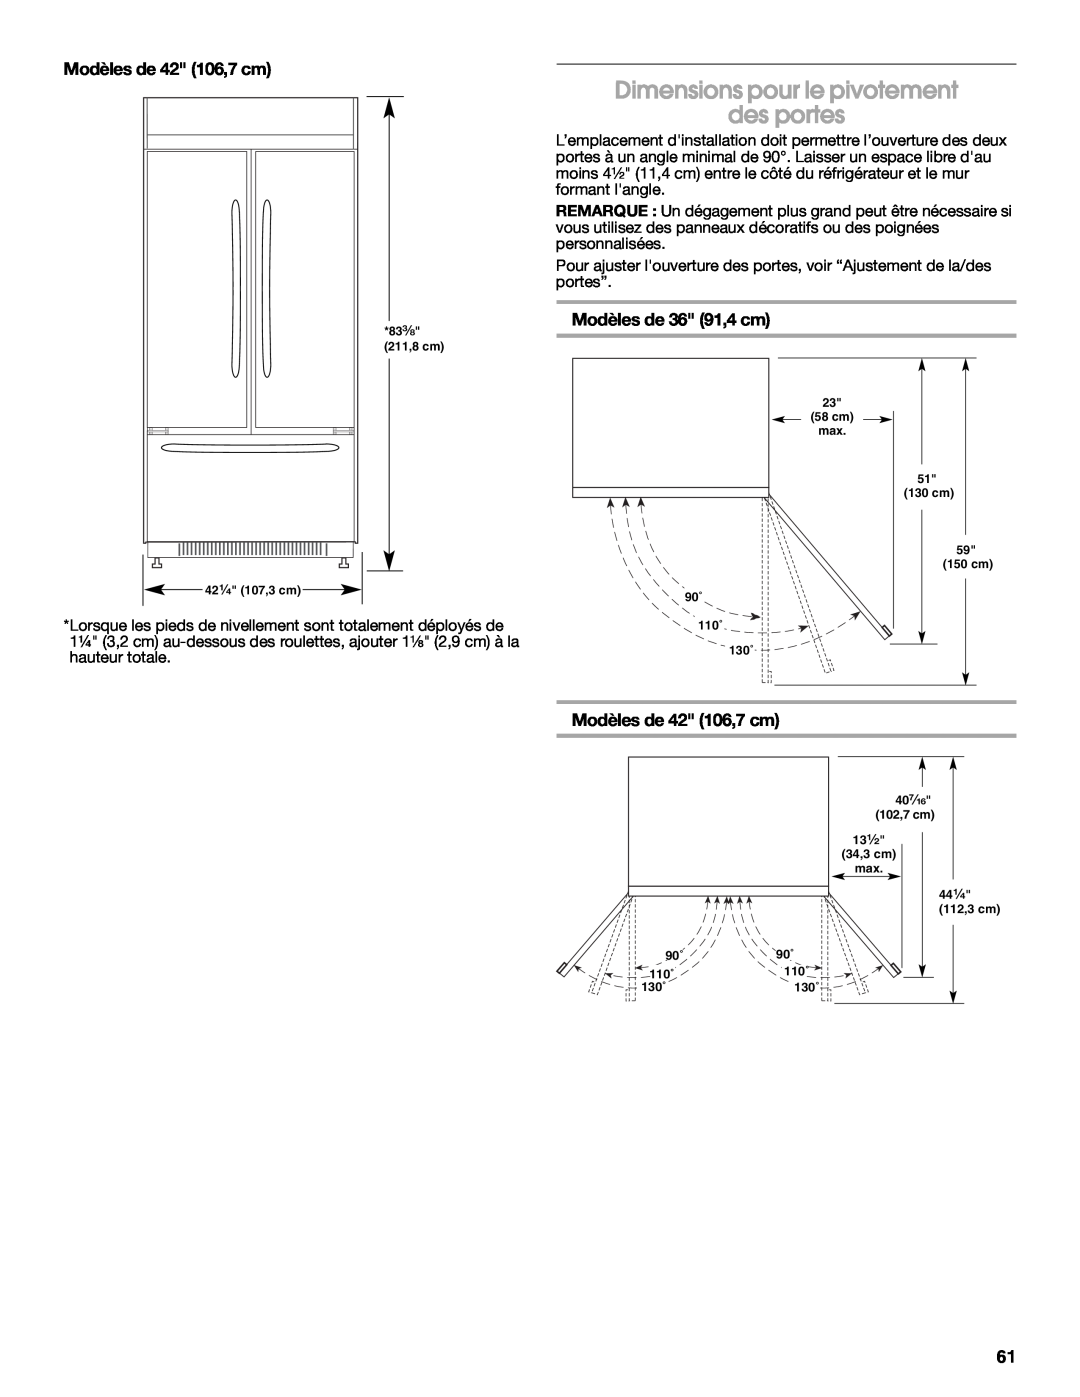 Jenn-Air W10183782A manual Dimensions pour le pivotement des portes, Modèles de 42 106,7 cm, Modèles de 36 91,4 cm 